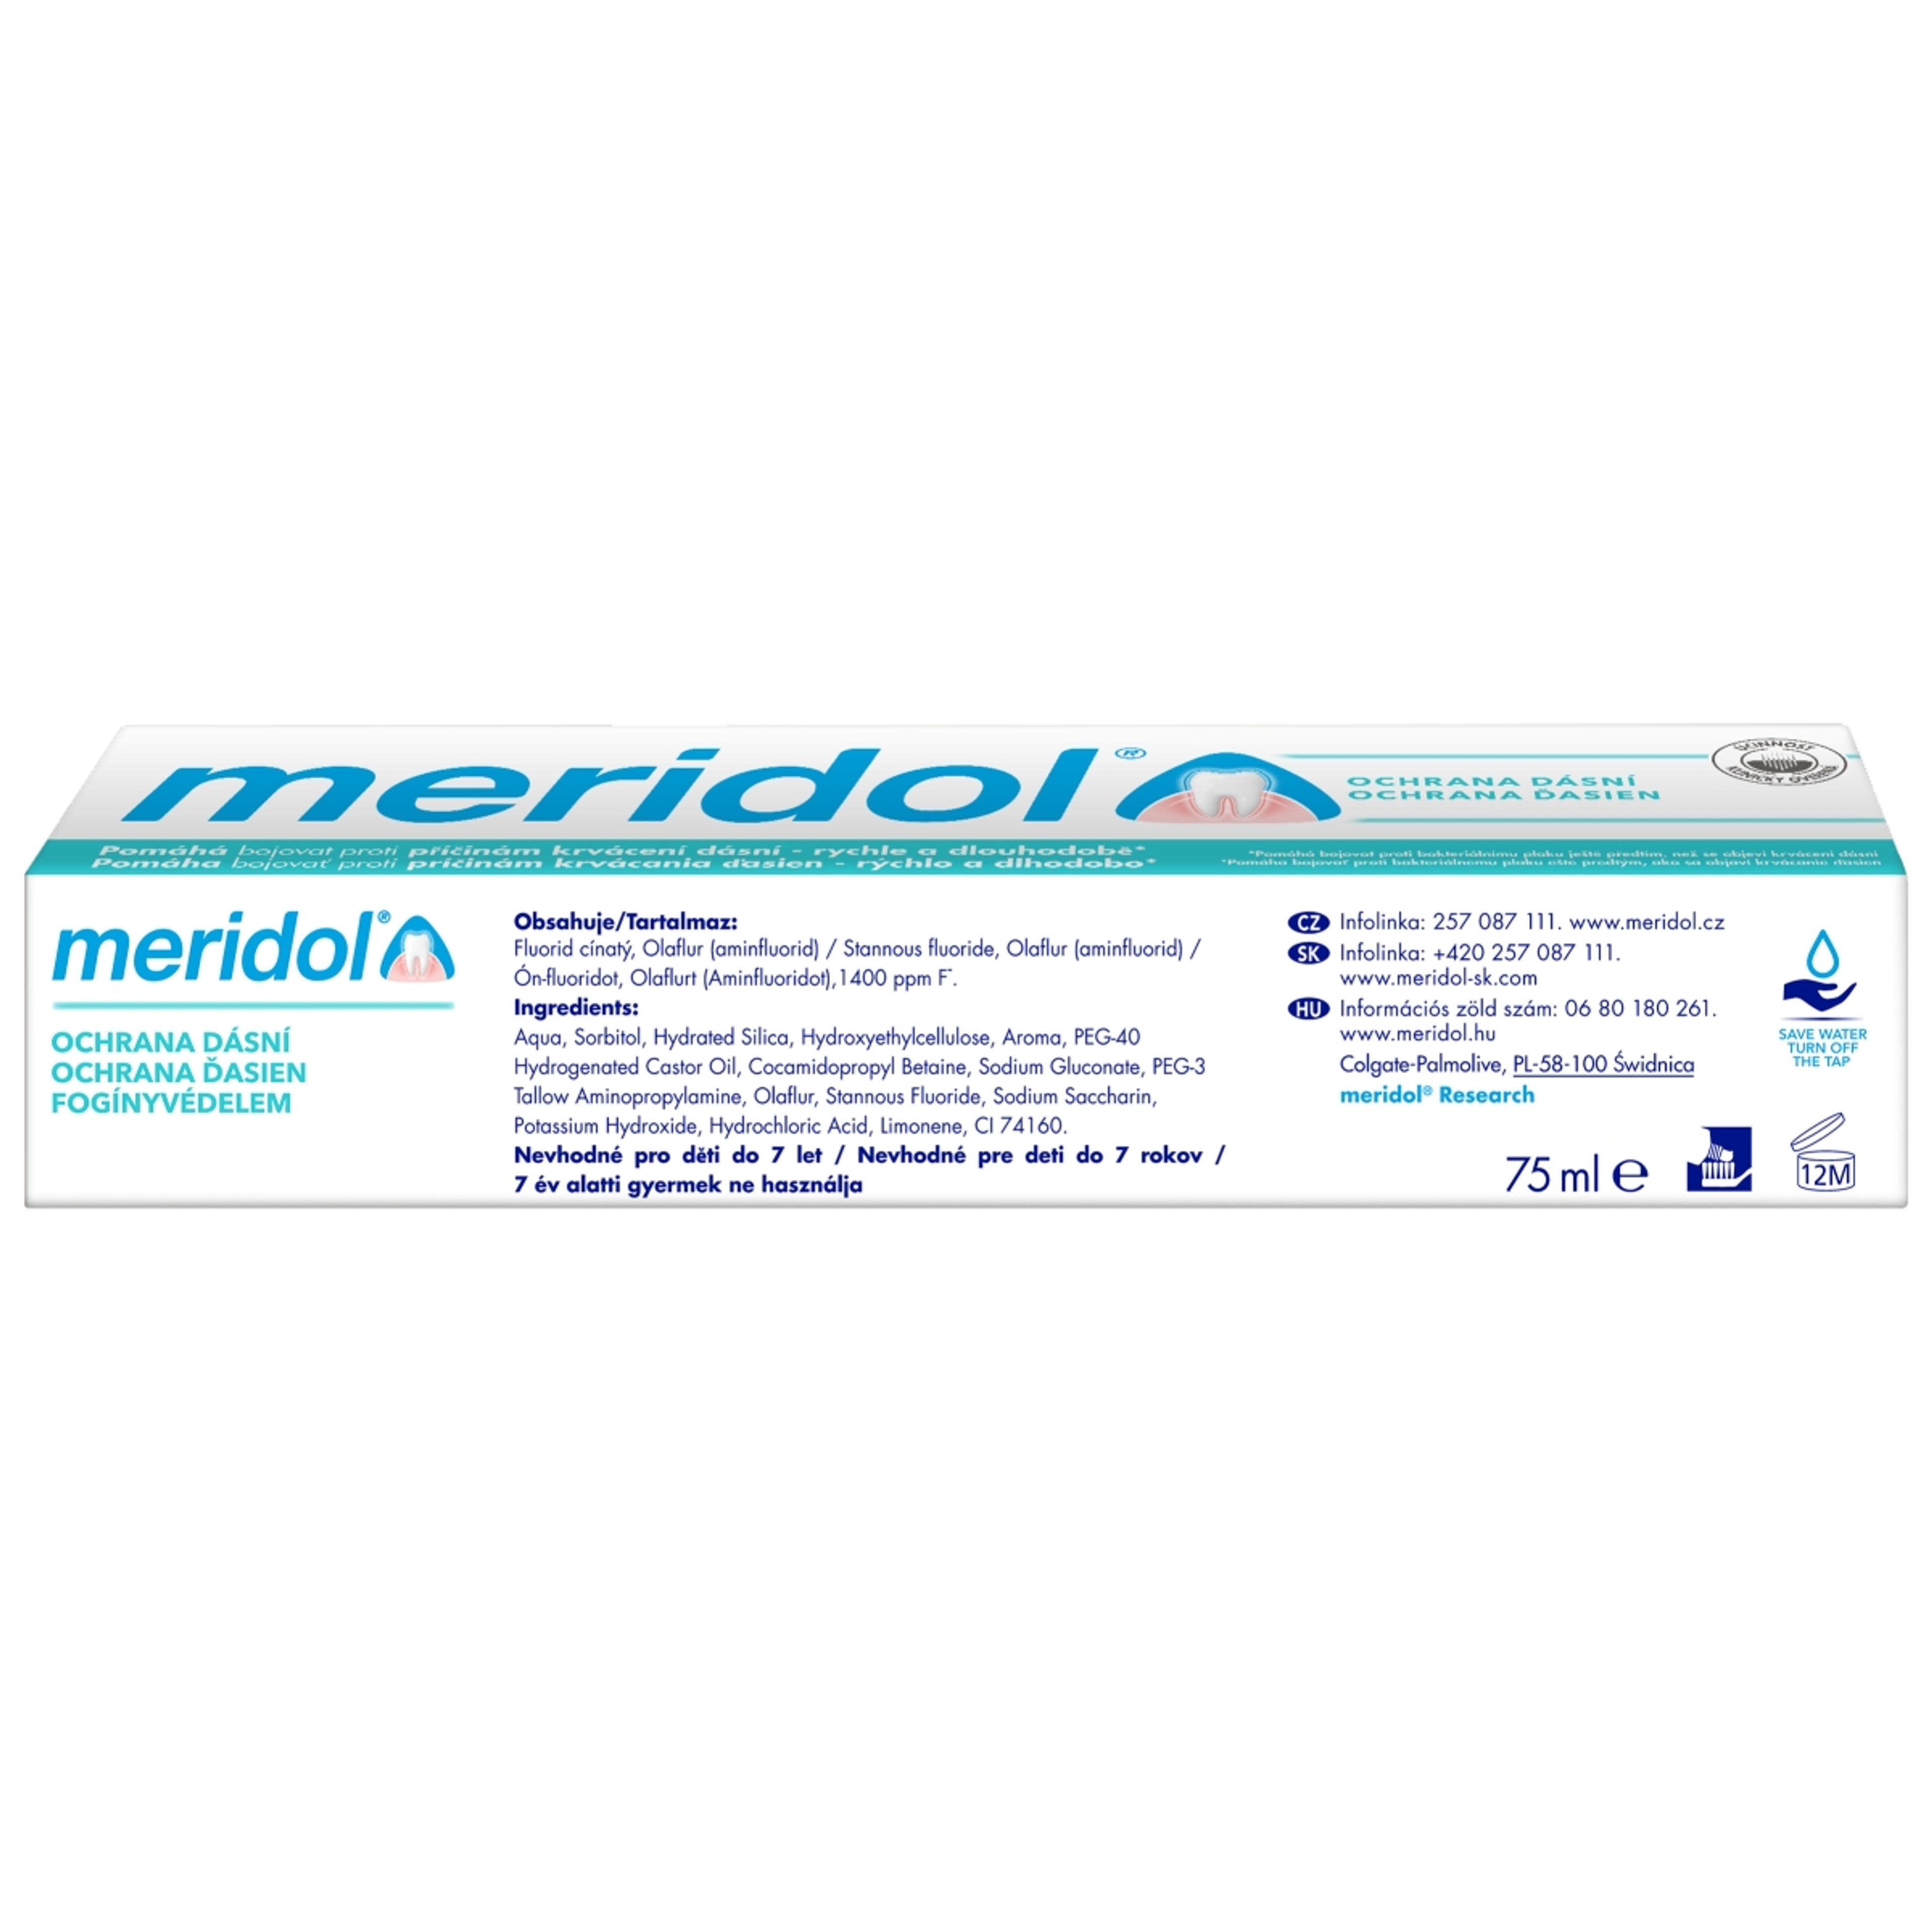 Meridol Fogínyvédelem fogkrém - 75 ml-4